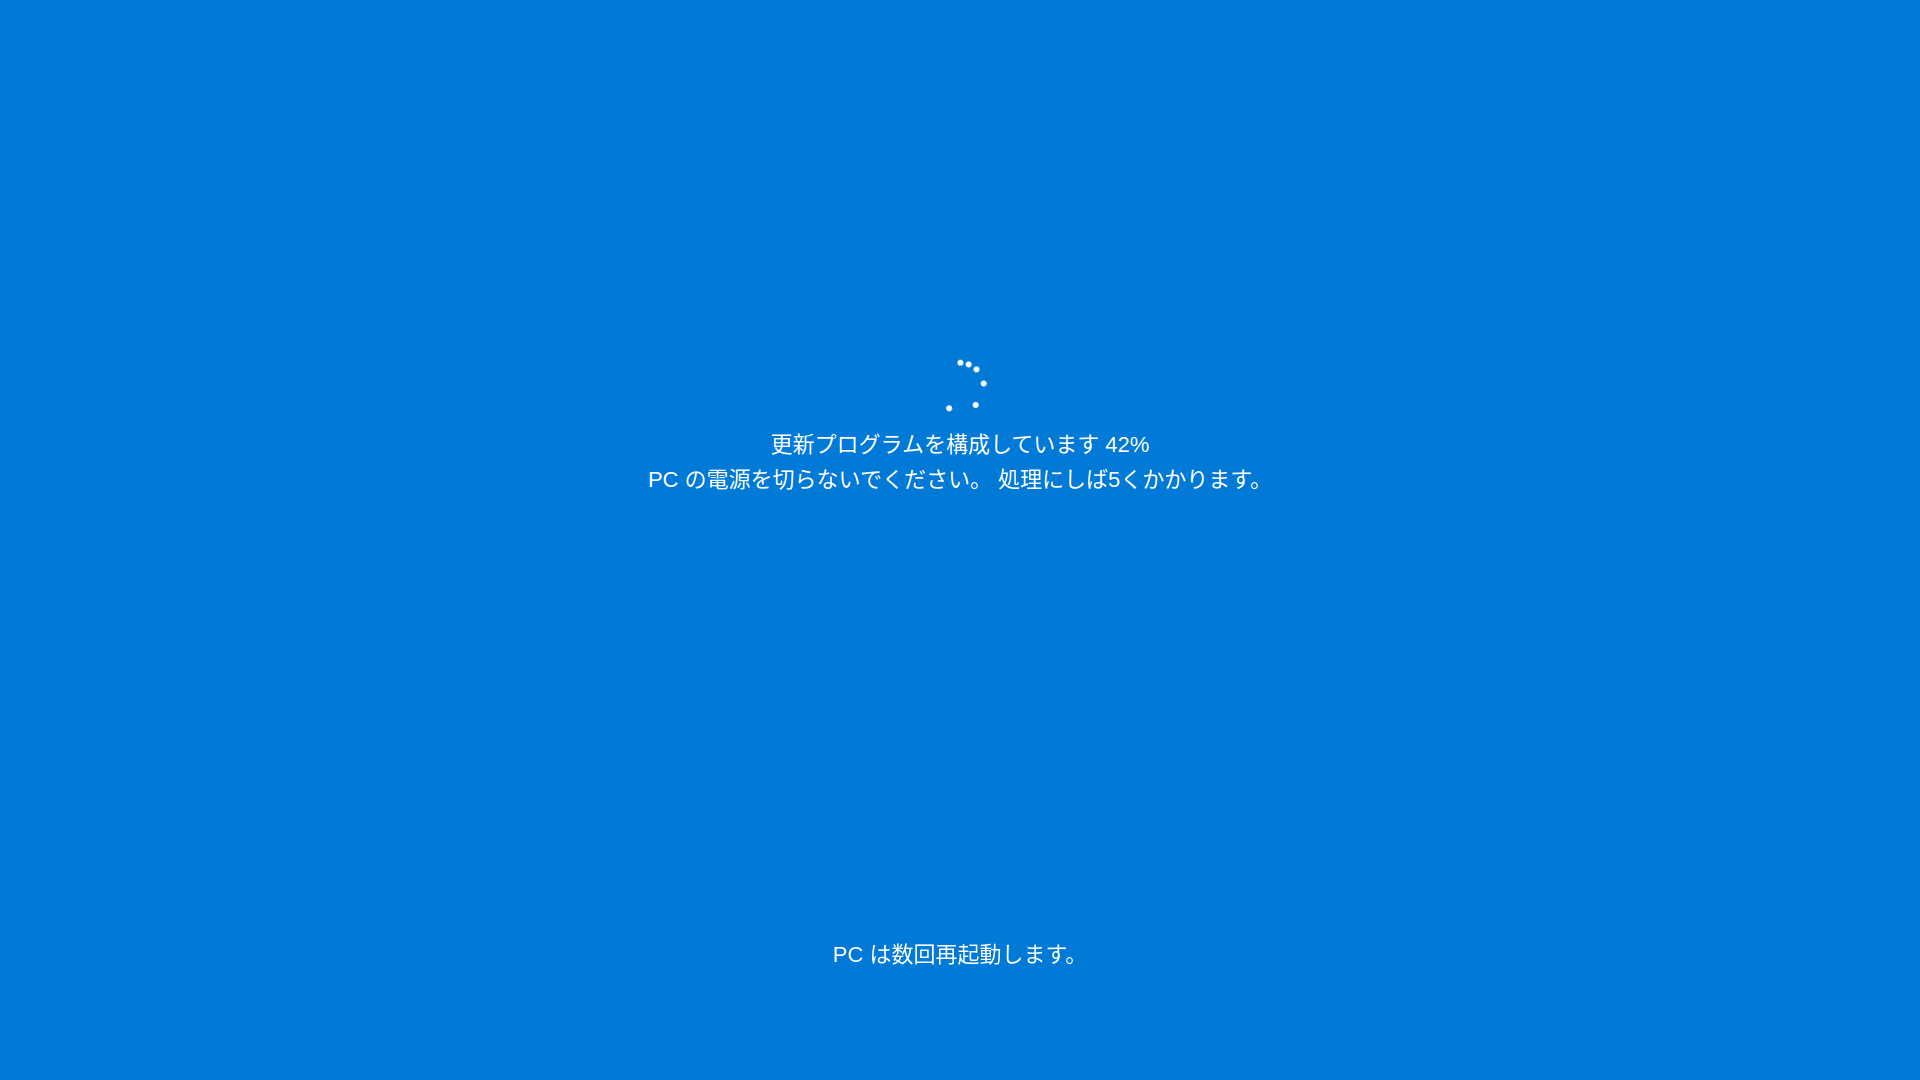 blue image background